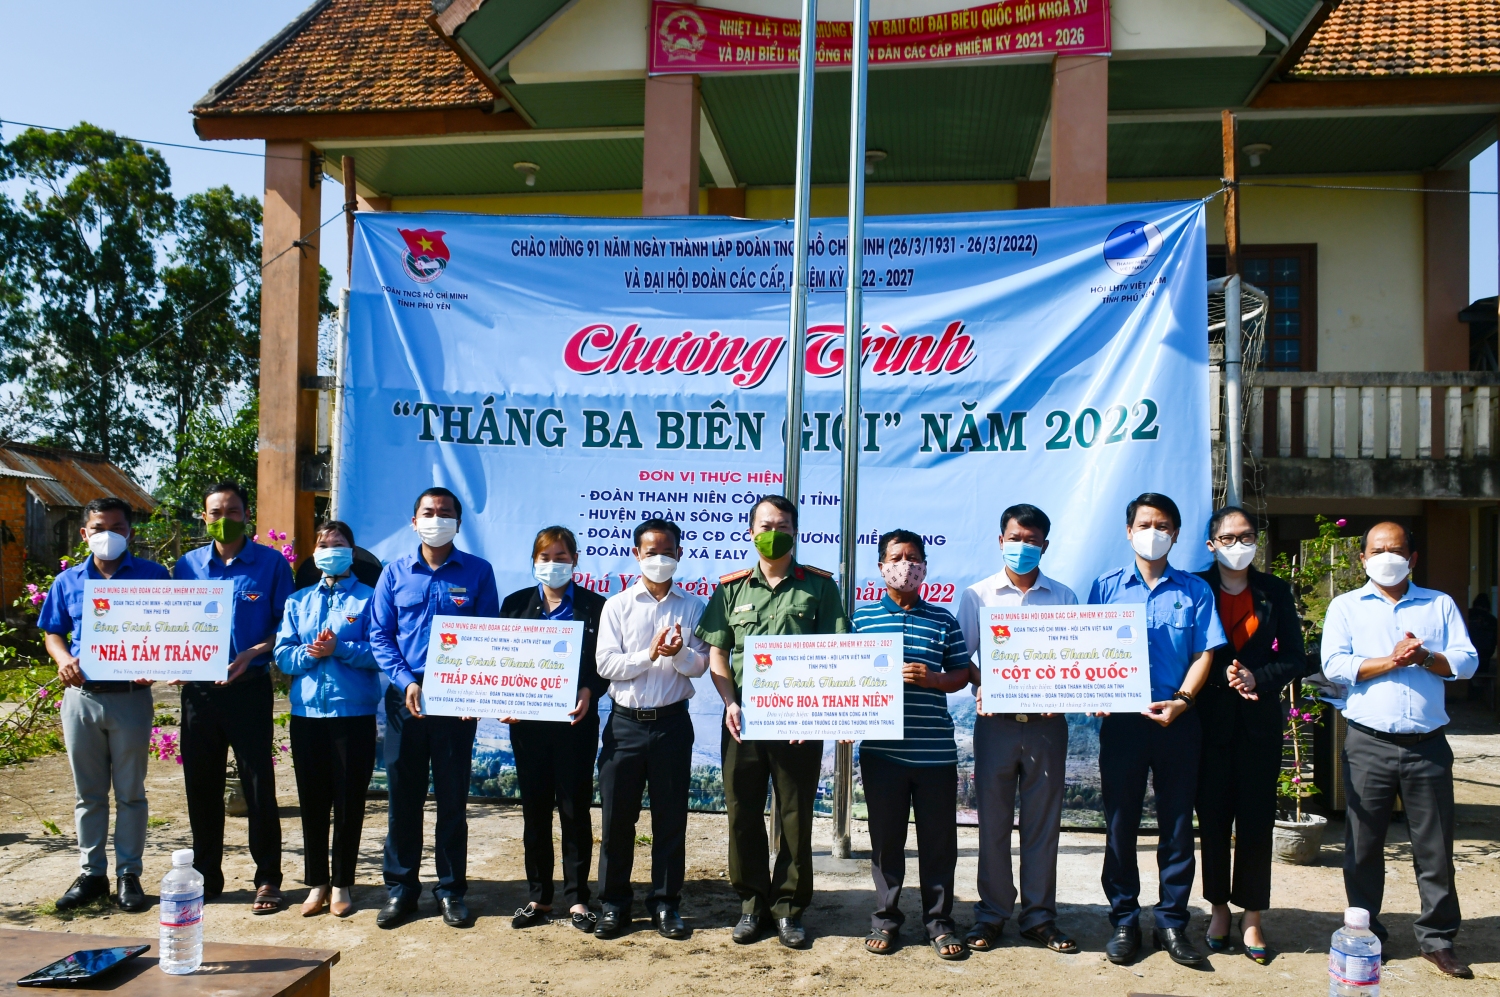 Tỉnh Đoàn, Hội LHTN Việt Nam tỉnh cùng các đơn vị trao bảng tượng trưng các công trình thanh niên cho địa phương xã Ea Ly.